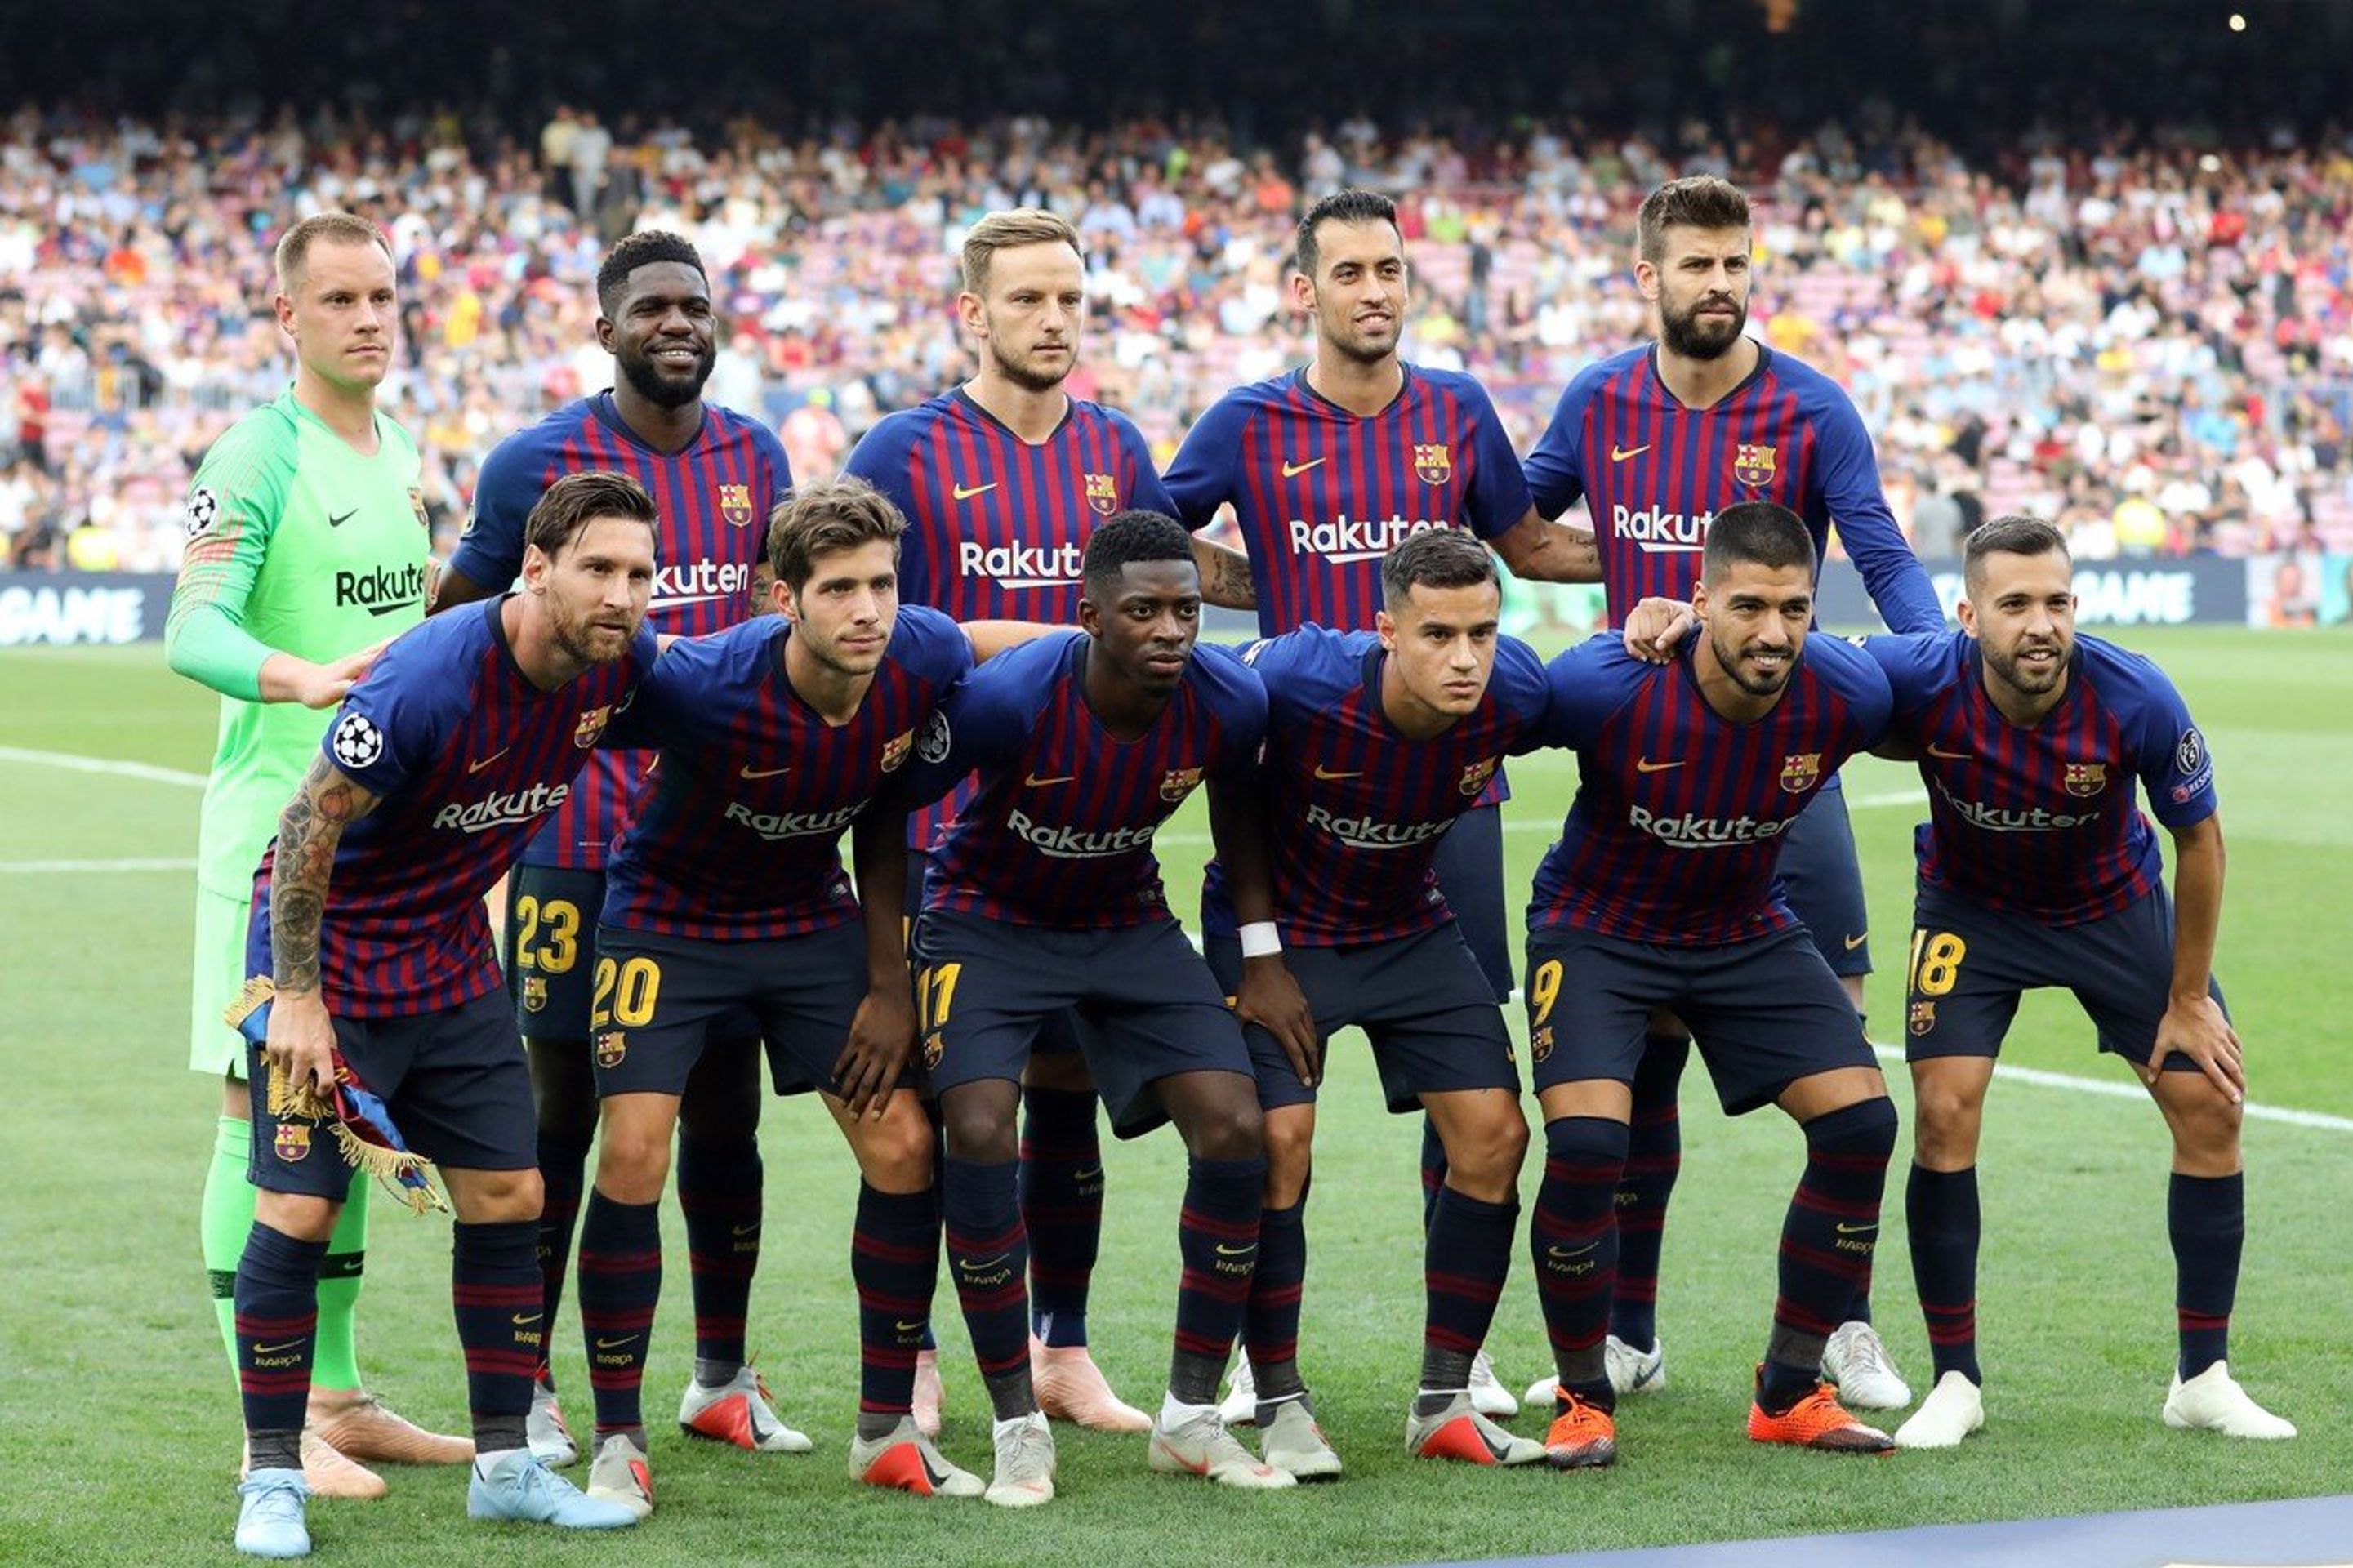 Barcelona - GALERIE: Přehled hodnot týmů hrající letošní ročník Ligy mistrů (2/4)